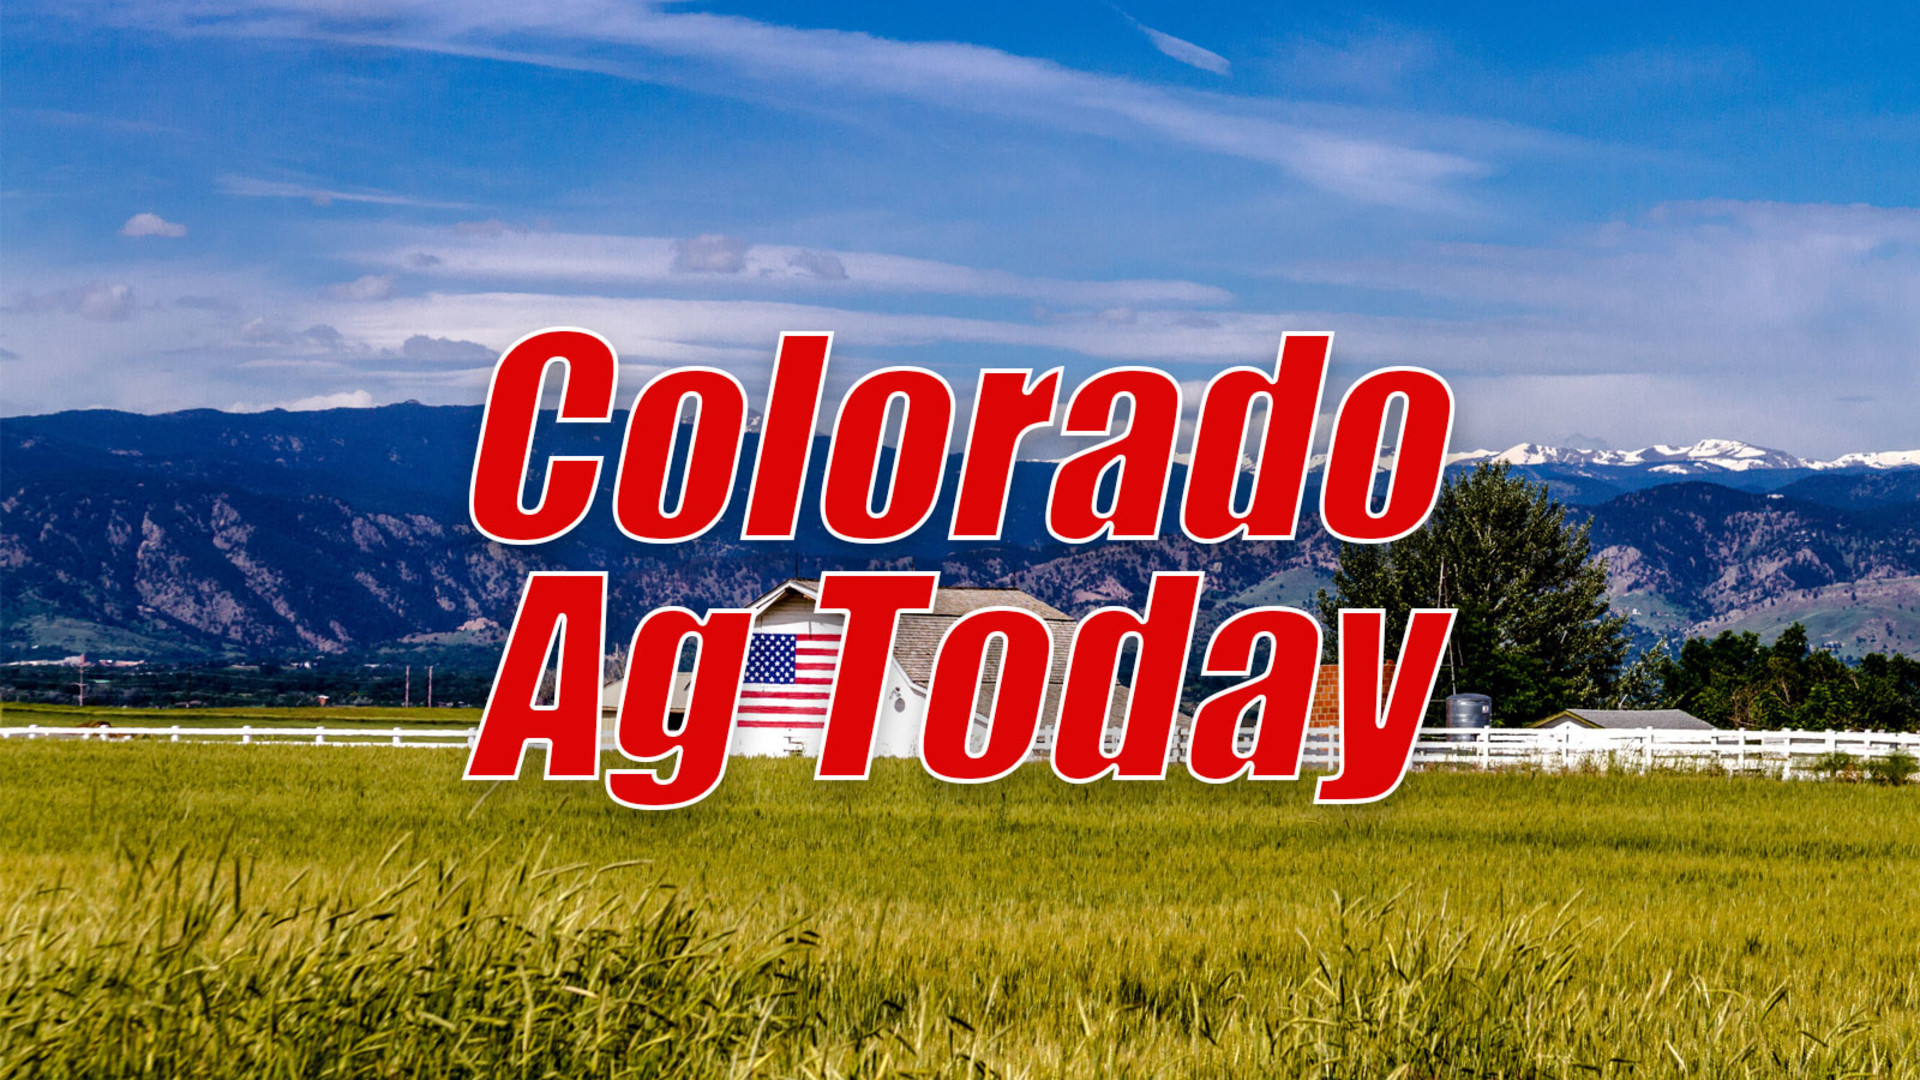 Colorado Wheat Group Optimistic